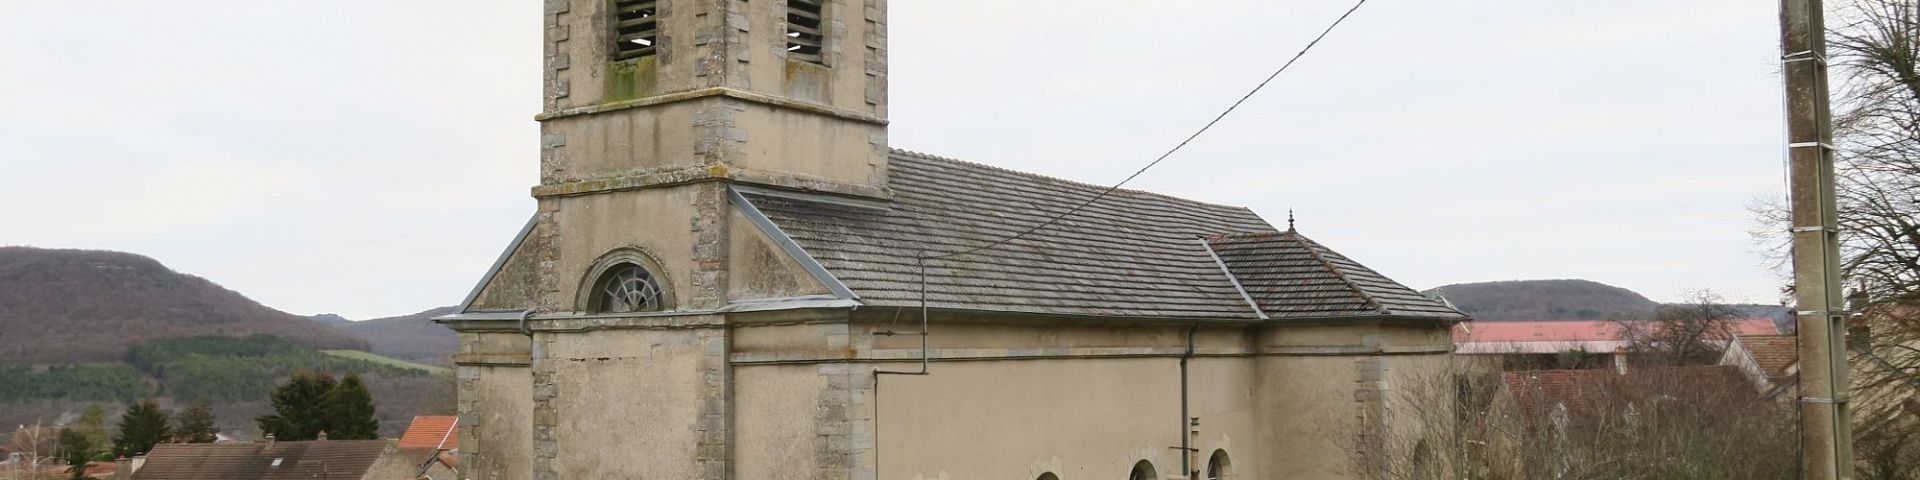 Urcy - Eglise Saint-Médard (21)